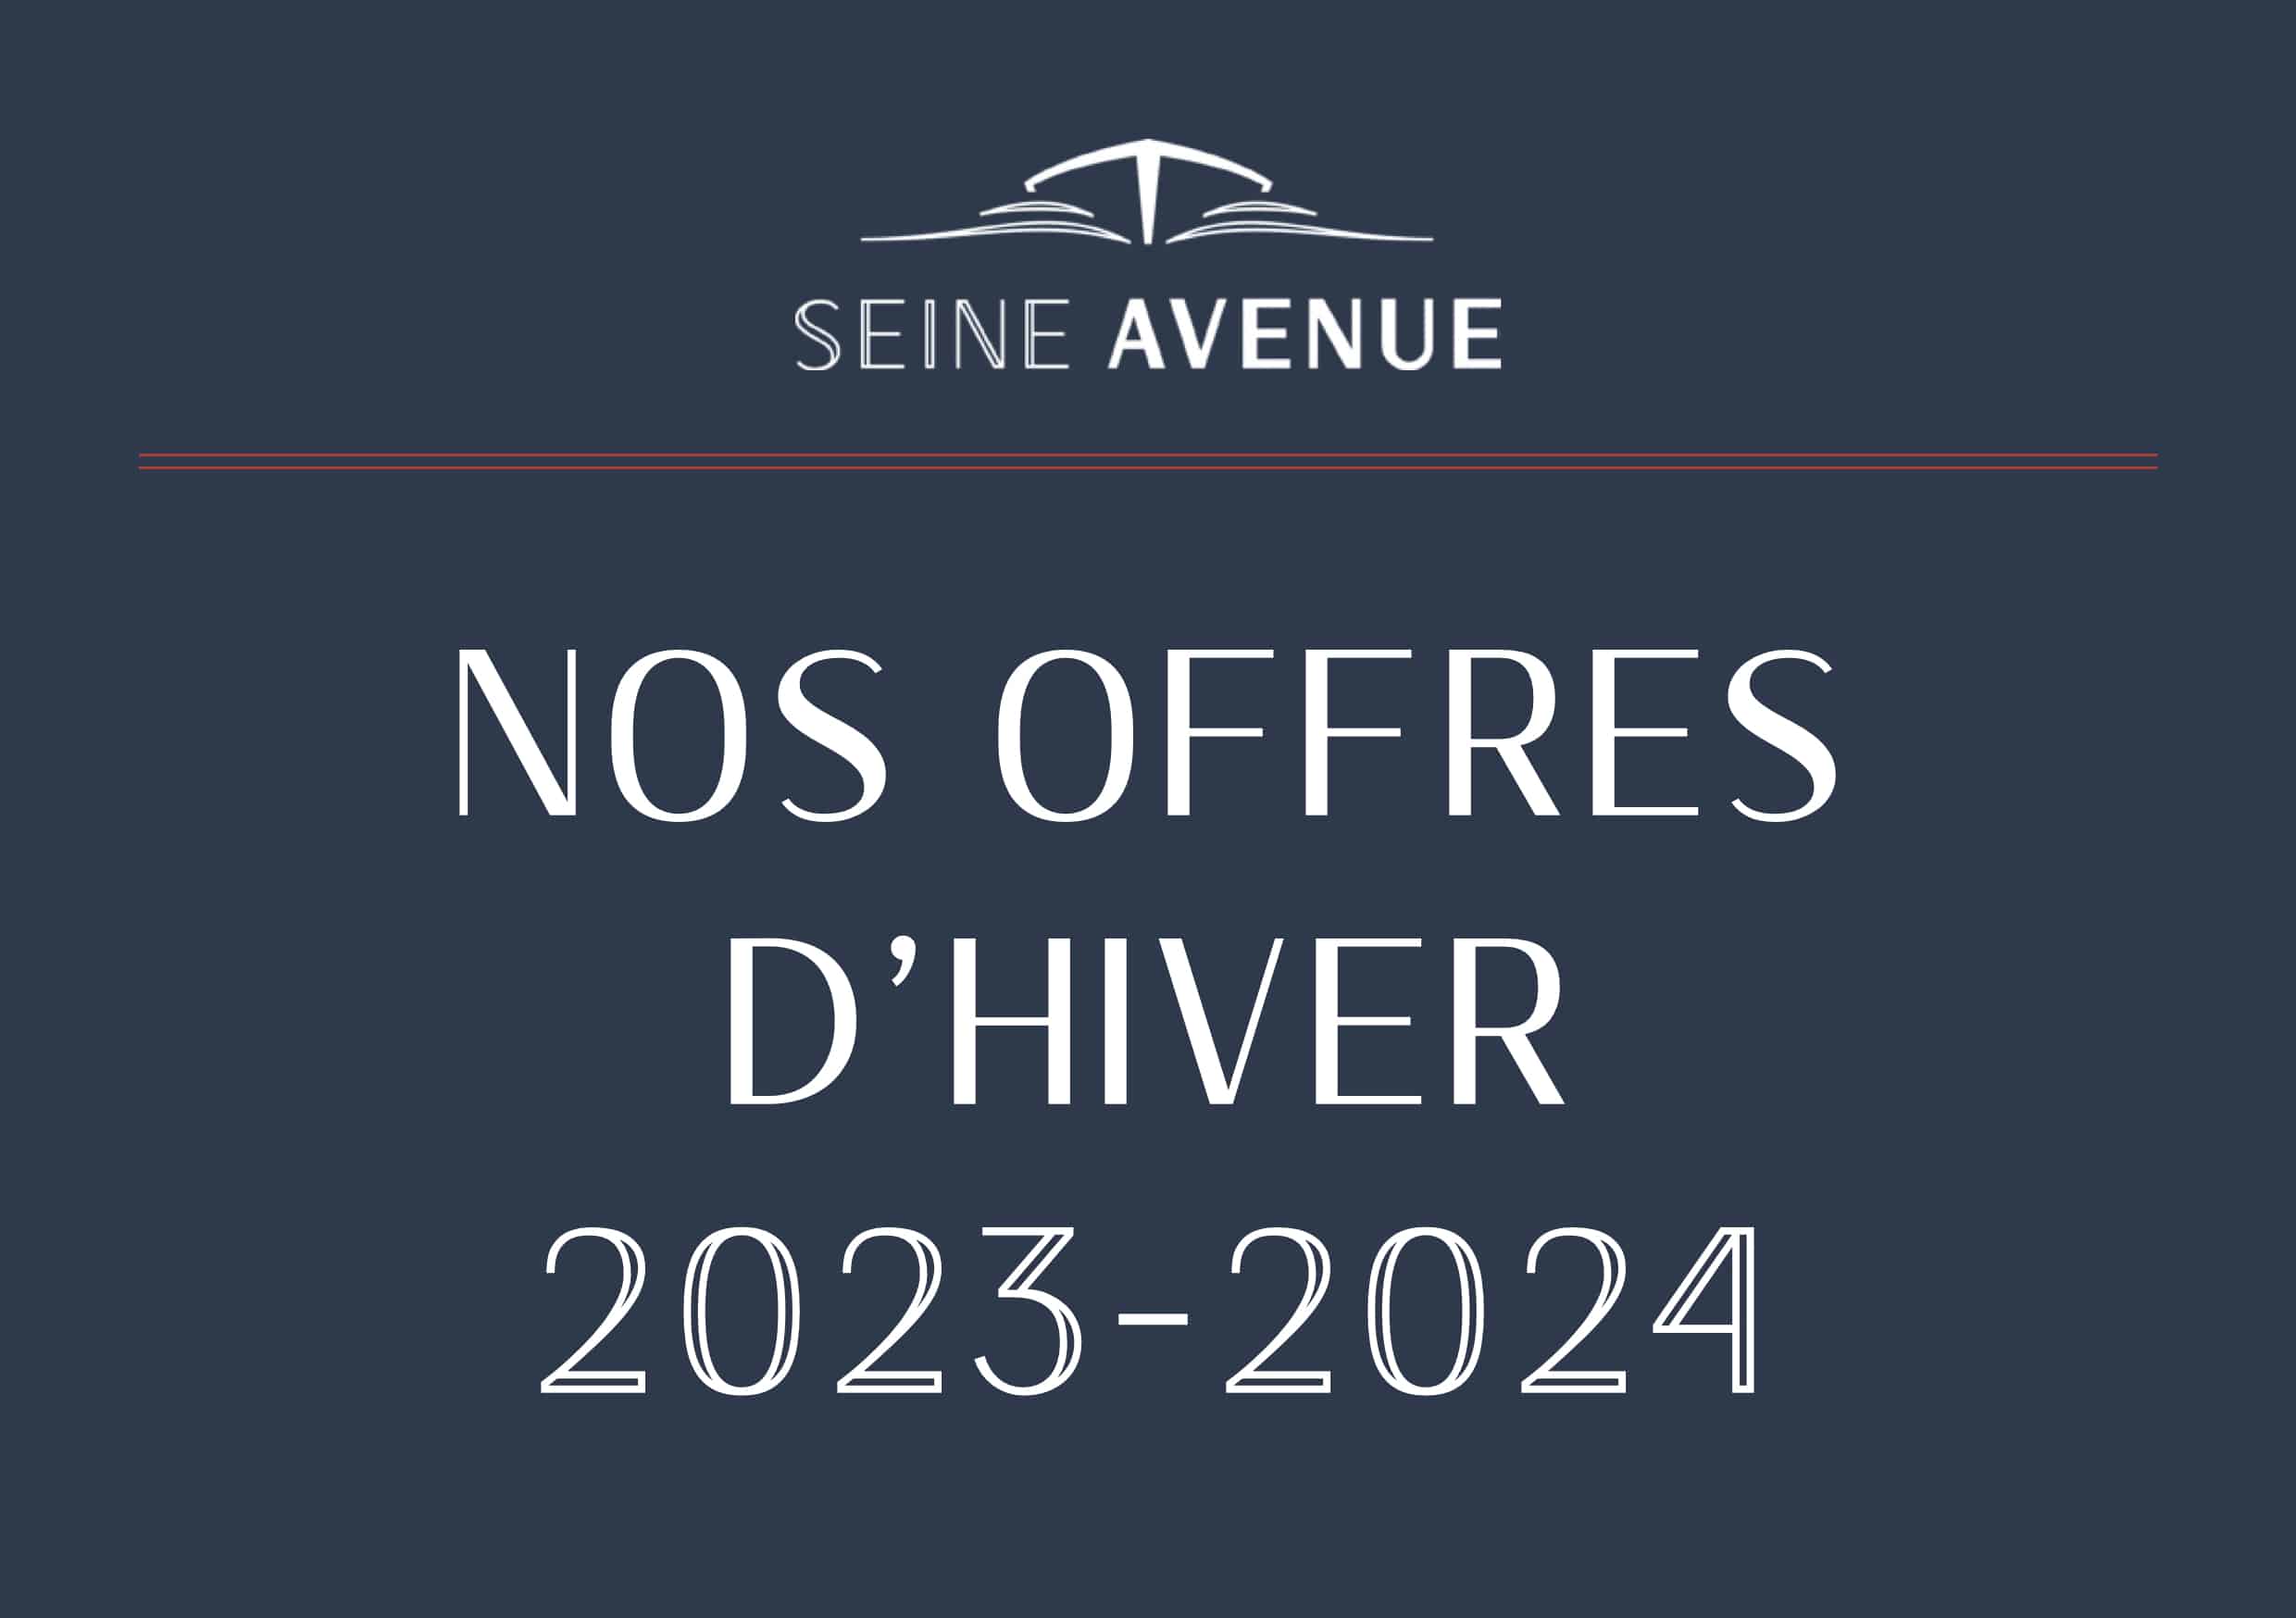 Seine avenue offres hiver 2024